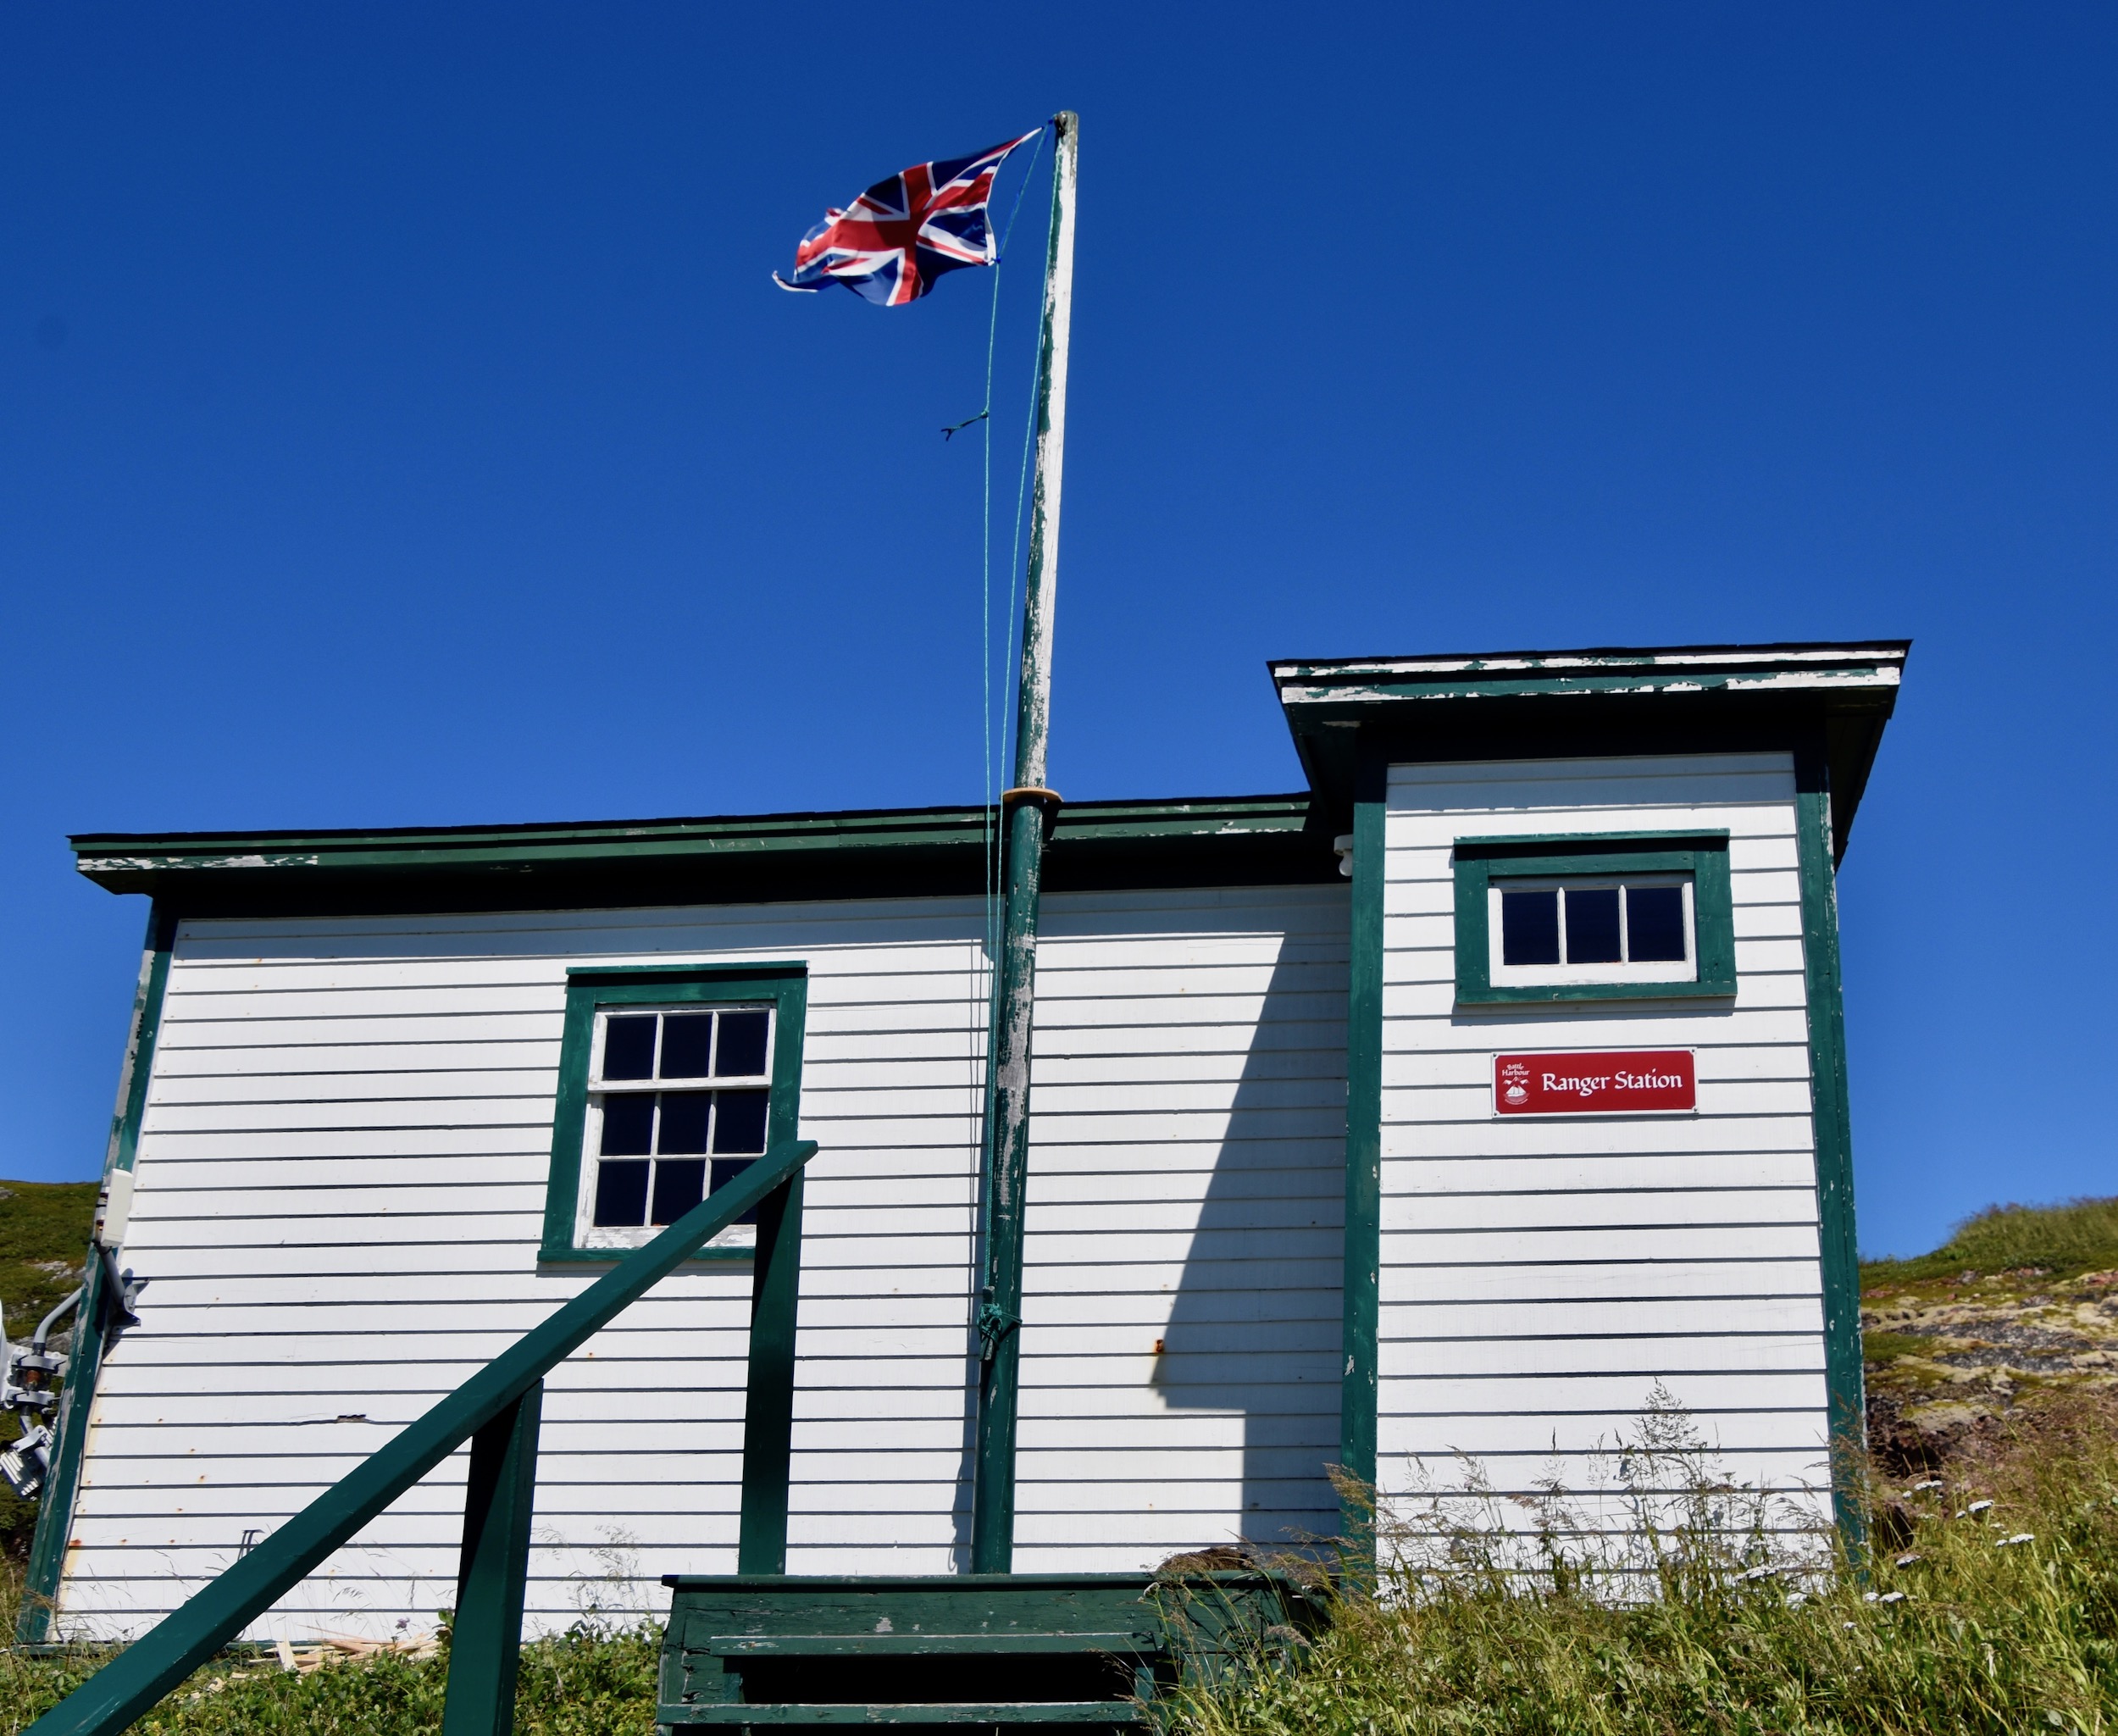  Ranger Station, Battle Harbour